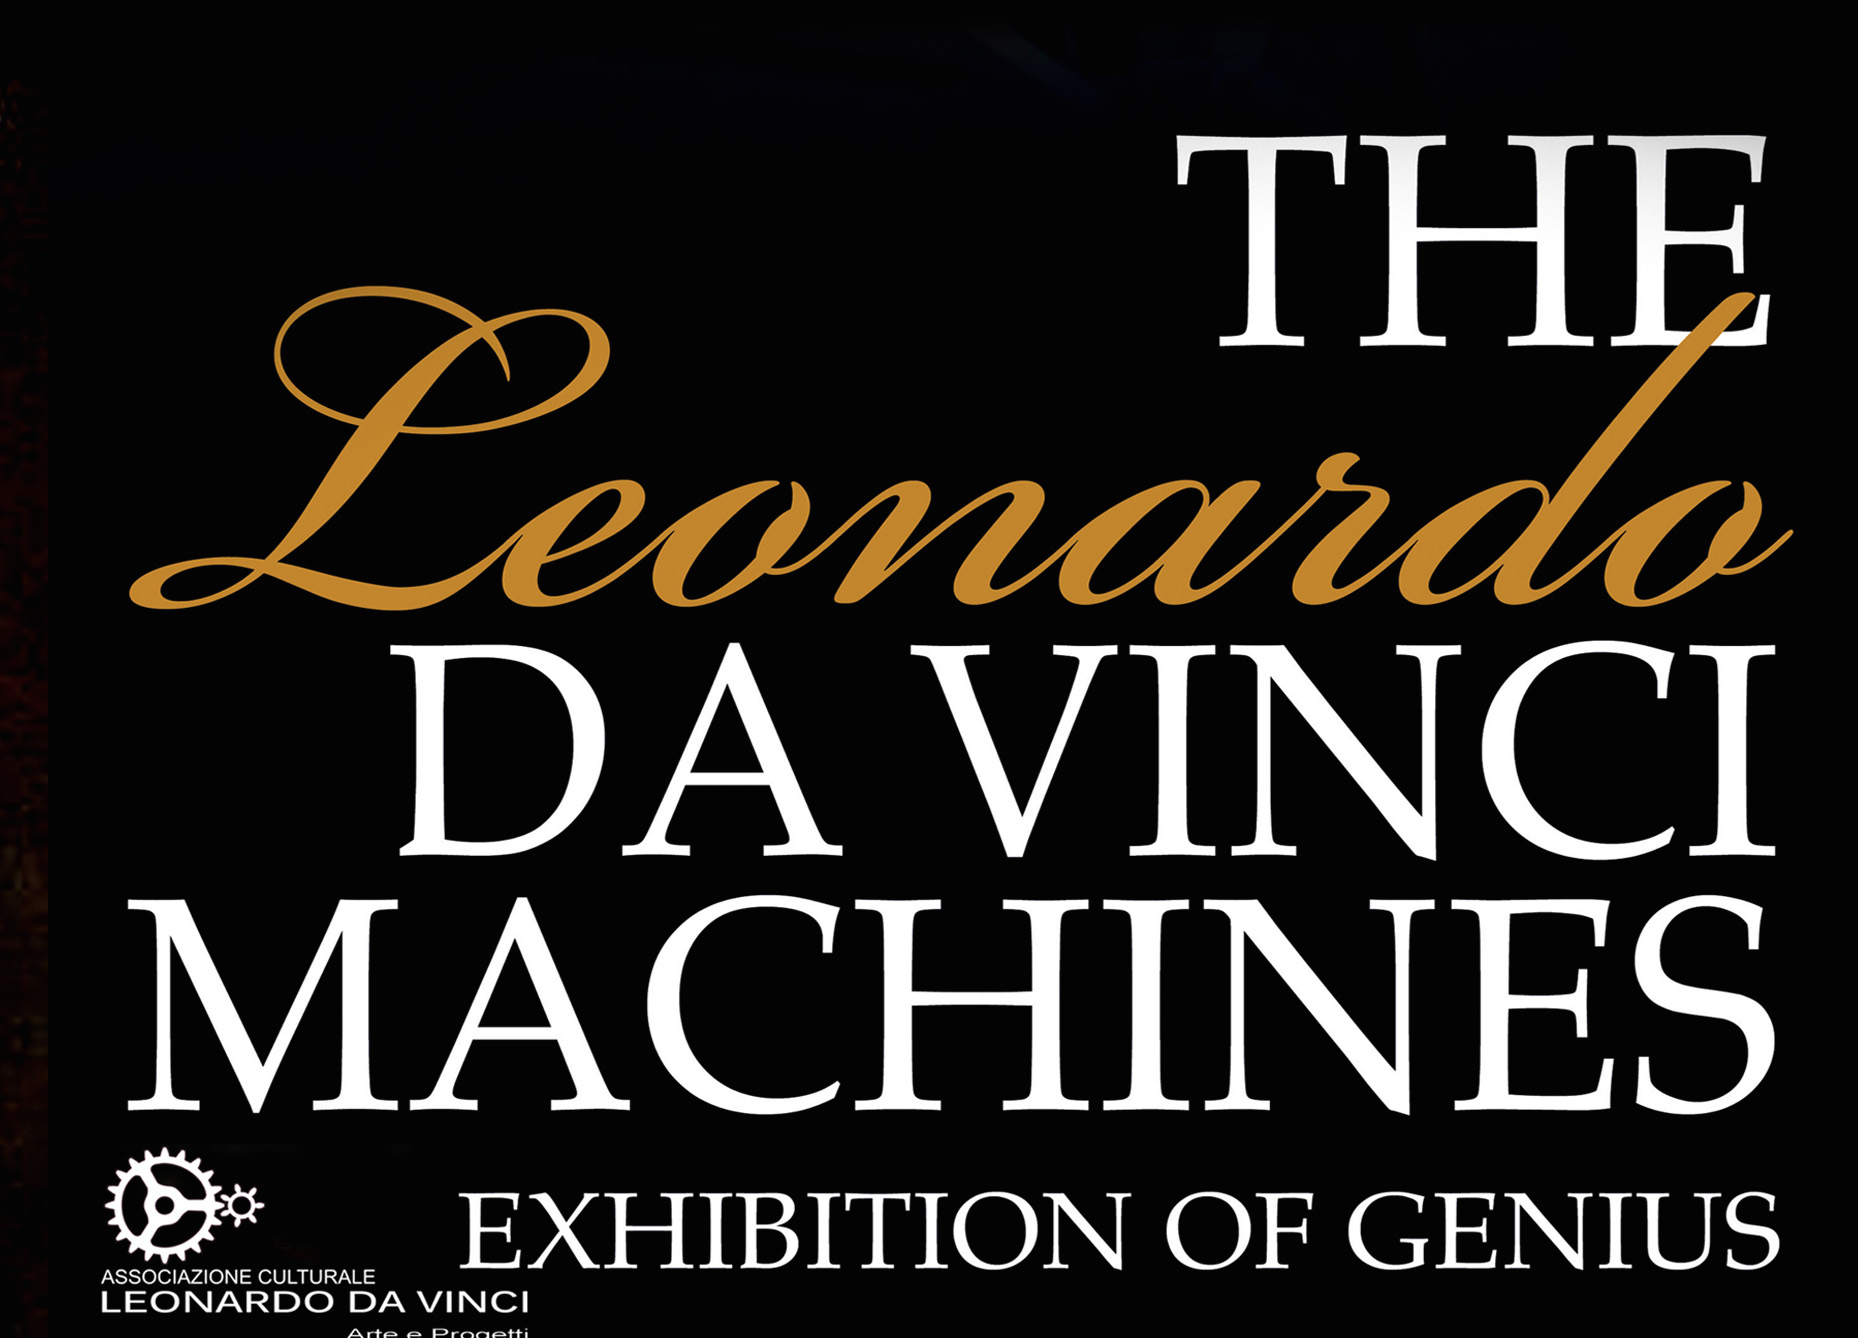 International Exhibition of Leonardo da Vinci